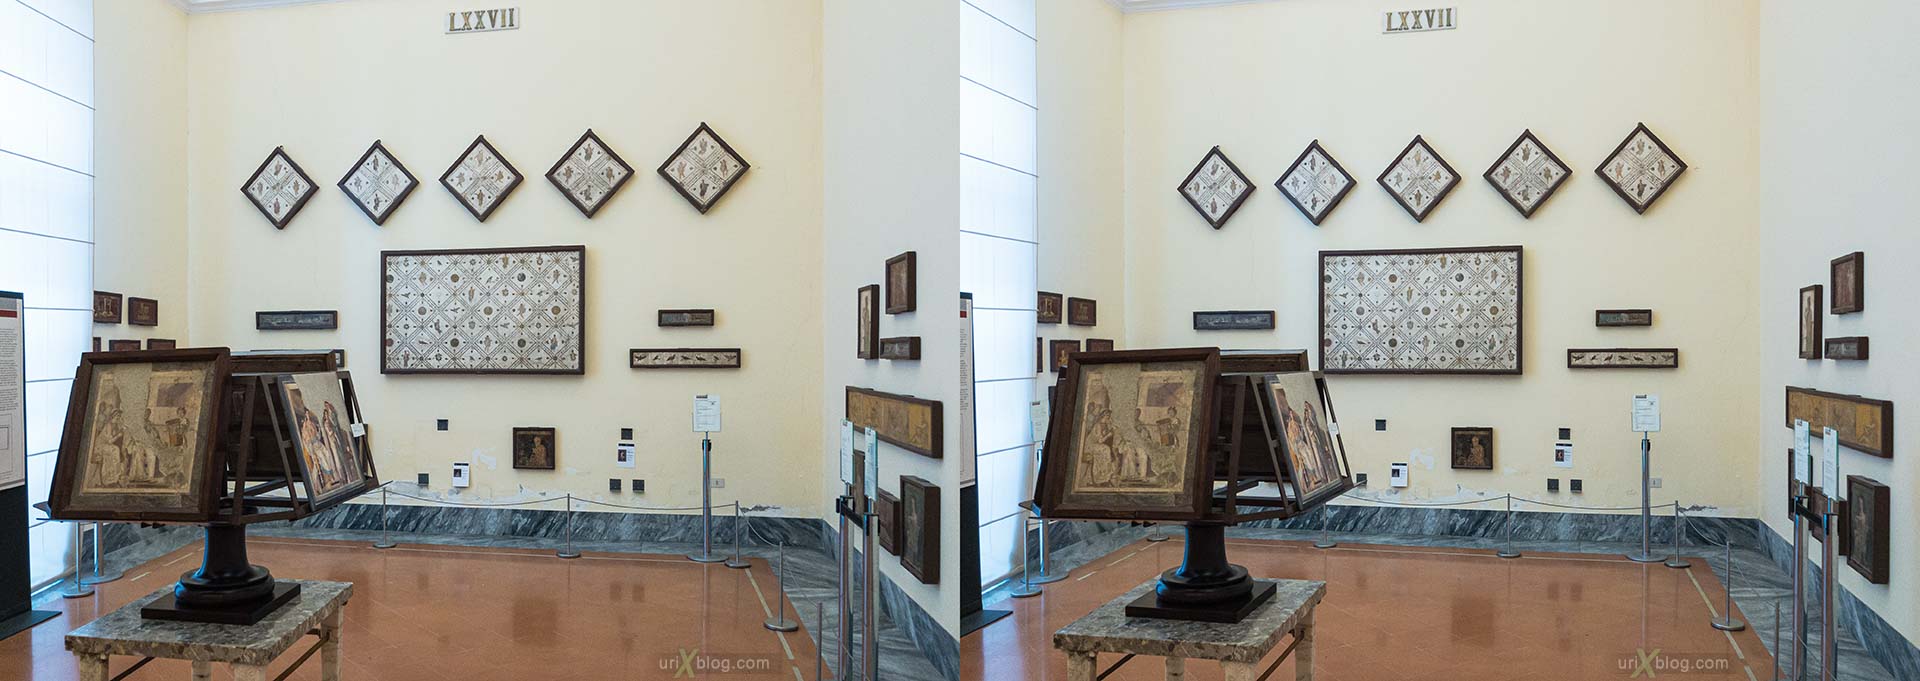 фрески, Национальный археологический музей Неаполя, Древний Рим, Помпеи, выставка, Неаполь, Италия, 3D, перекрёстная стереопара, стерео, стереопара